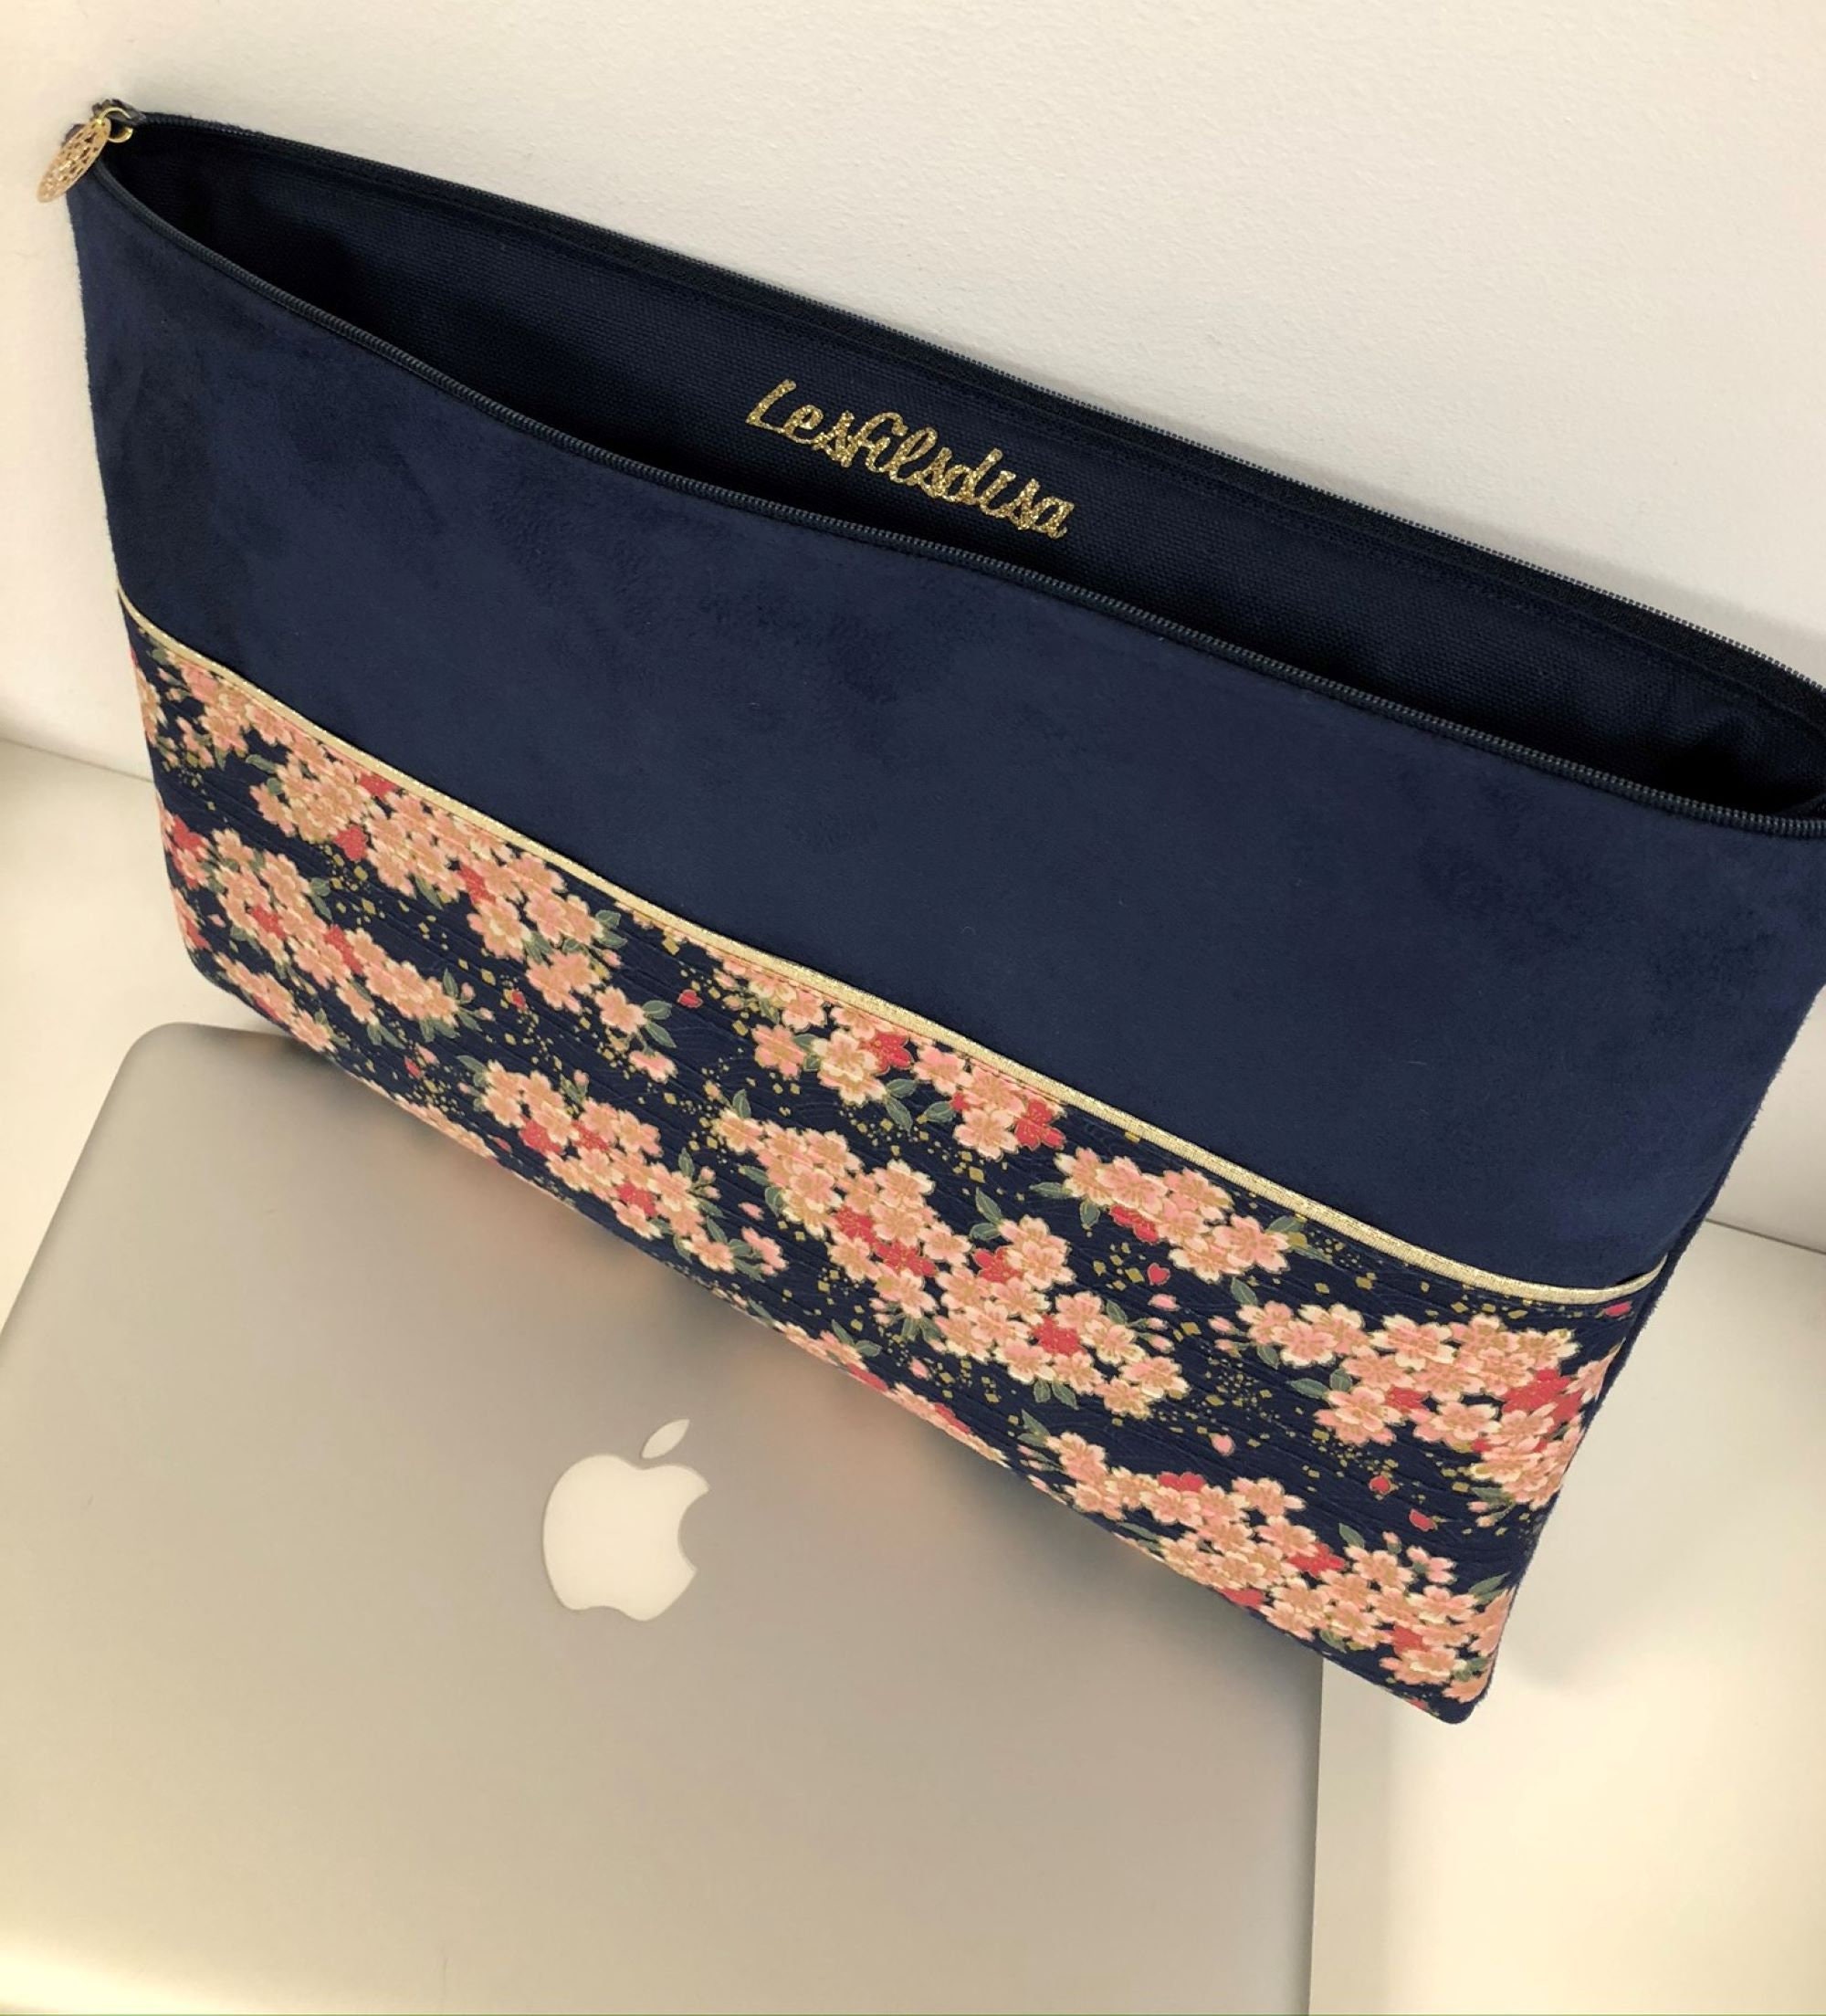 Pochette ordinateur bleu marine, dorée, avec poche chargeur / Housse  MacBook tissu japonais fleuri, suédine, liseré doré / Fleurs cerisiers -   France